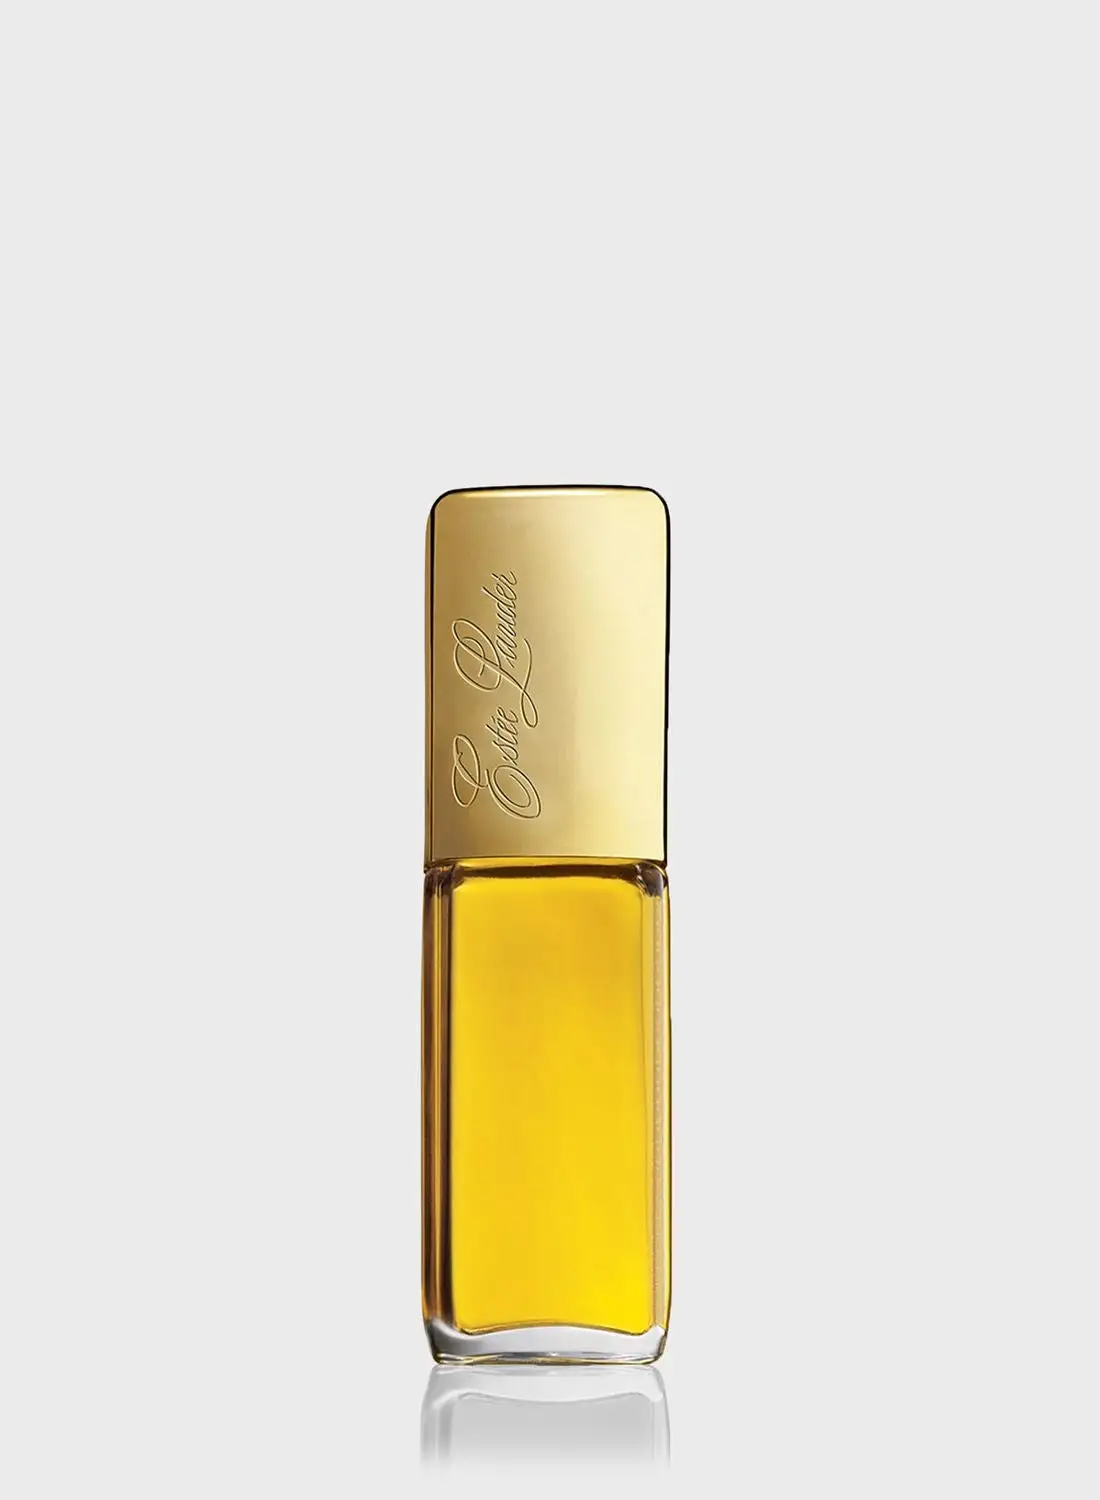 ESTEE LAUDER Private Collection Eau de Parfum 50ml